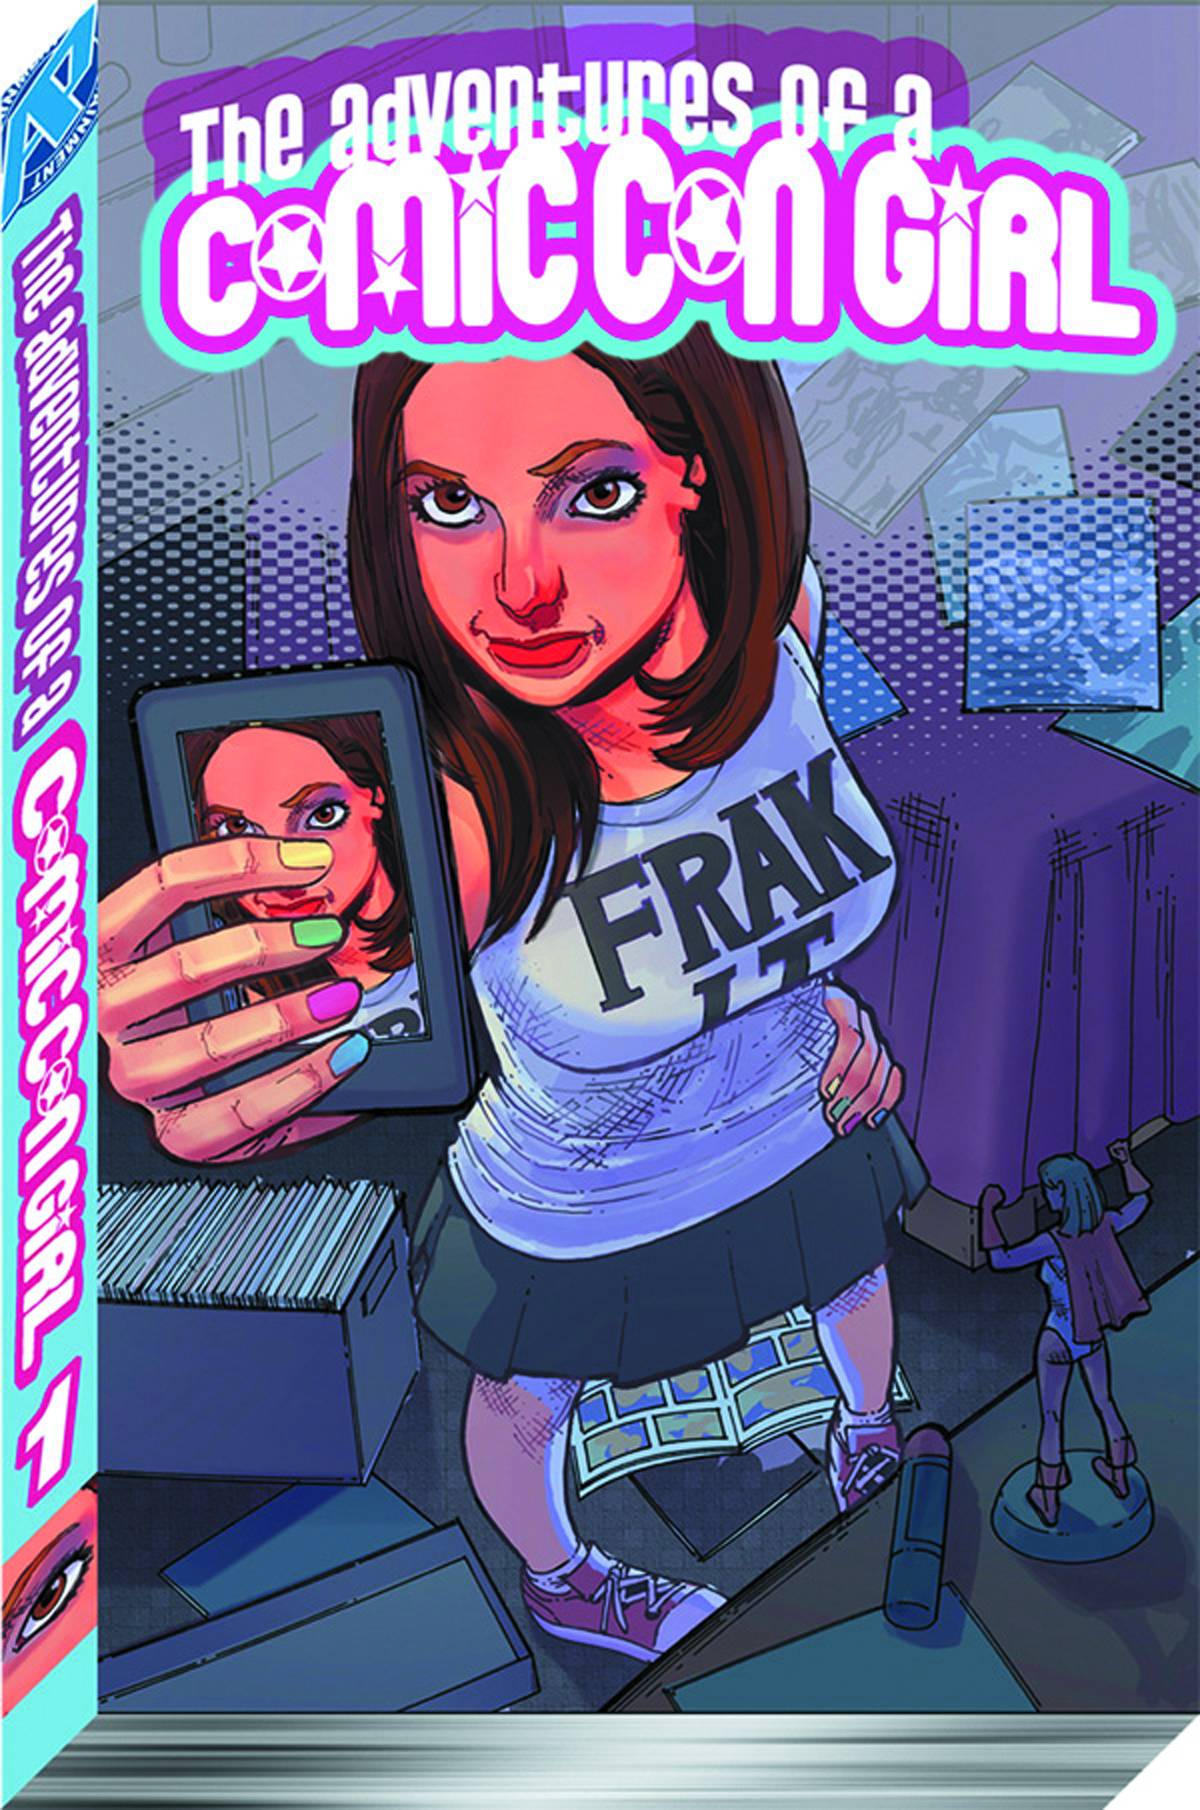 Adventures of A Comic Con Girl Graphic Novel